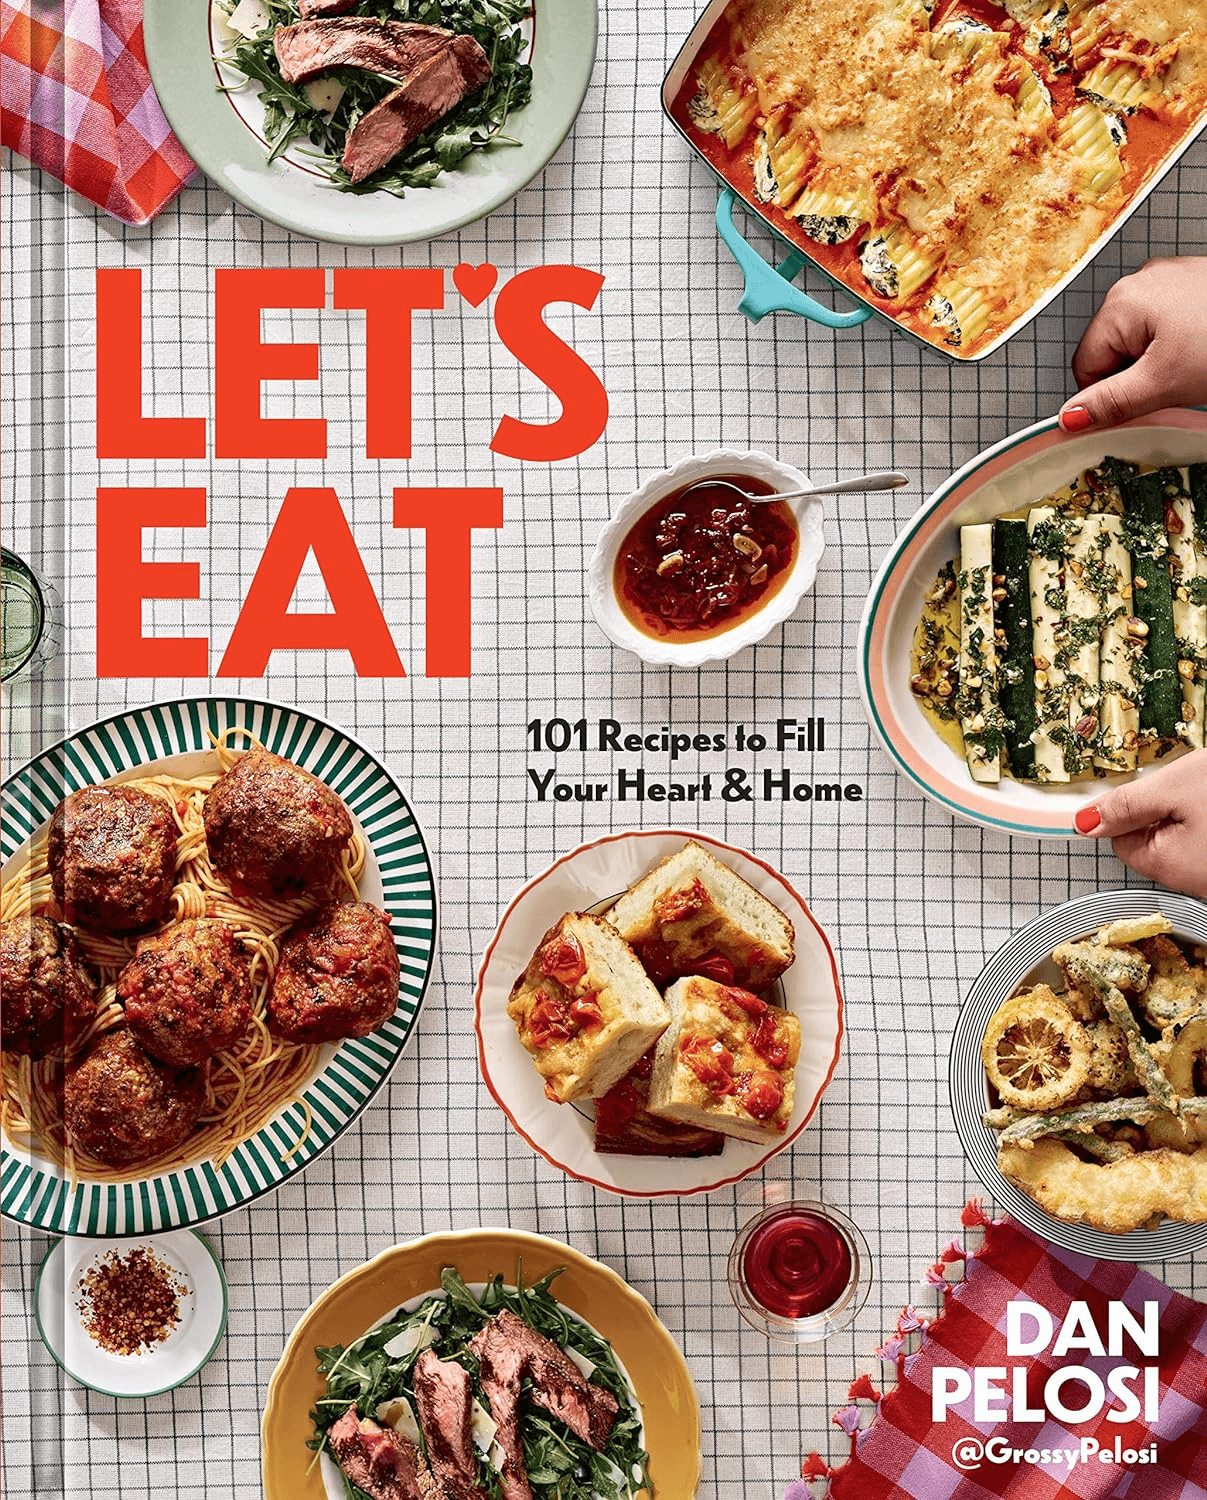 Let's Eat book cover by Dan Pelosi